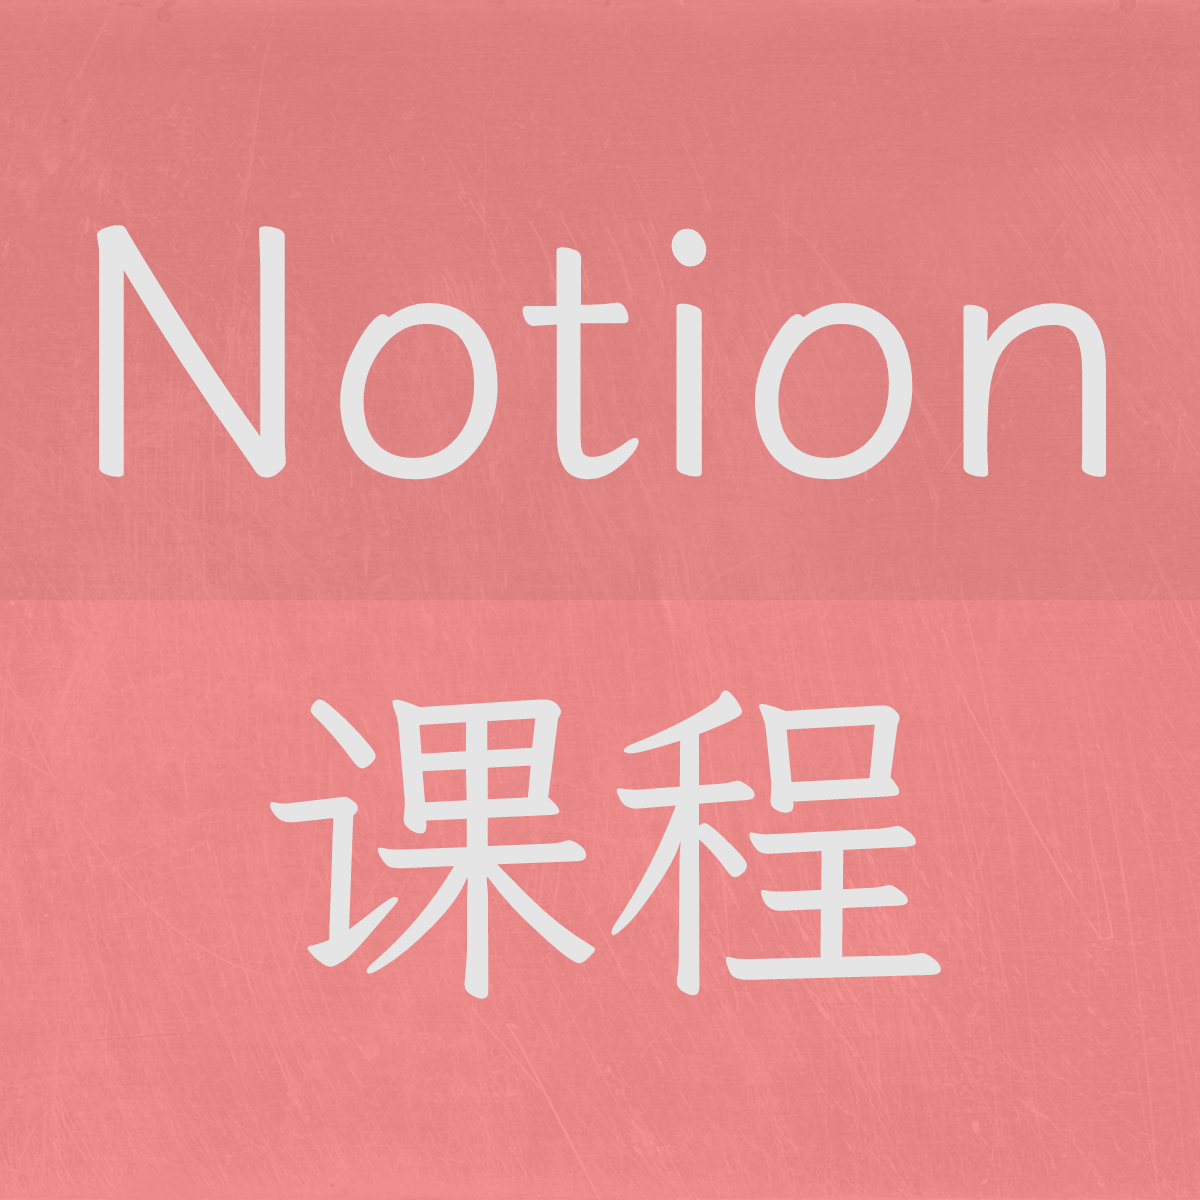 Notion 中文系统课程